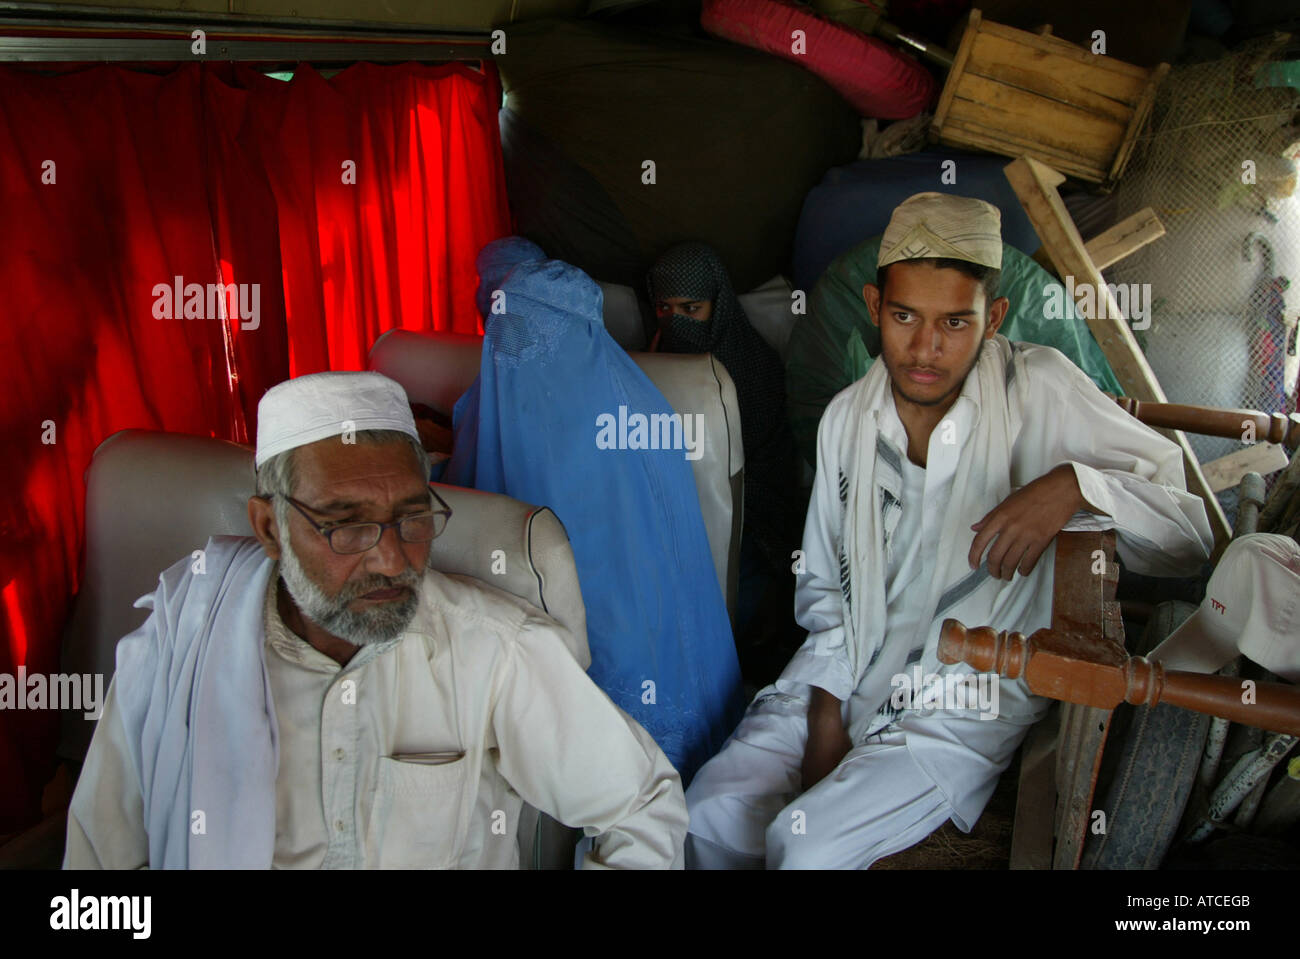 Económico afganos refugiados en Peshawar se ven obligados a regresar a Afganistán Foto de stock